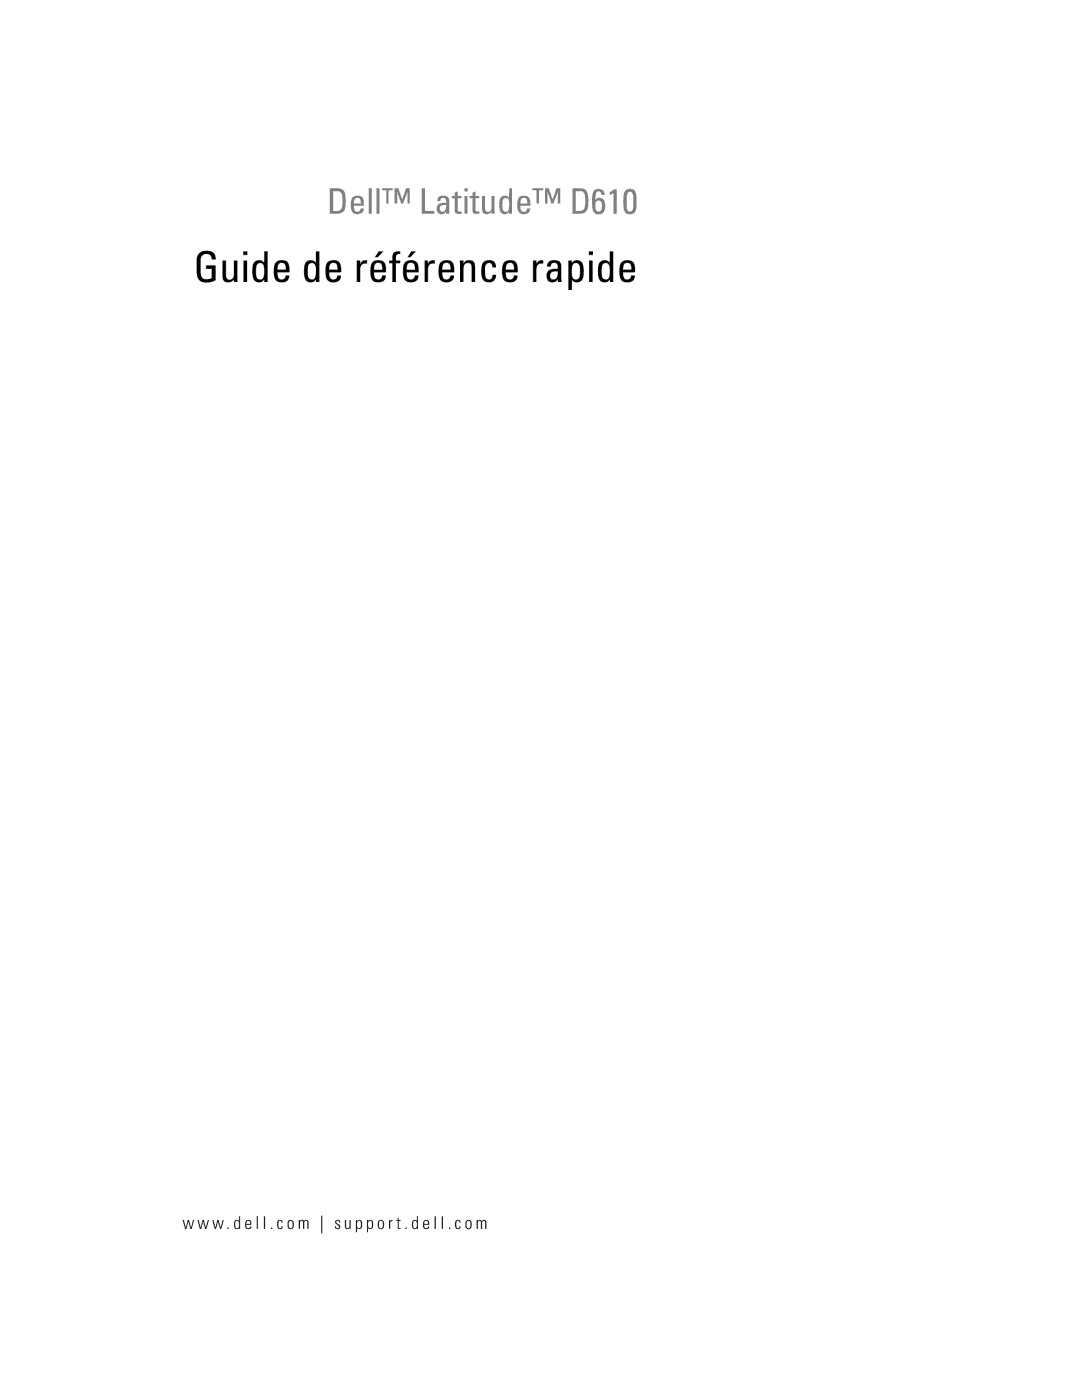 Dell D610 manual Guide de référence rapide 